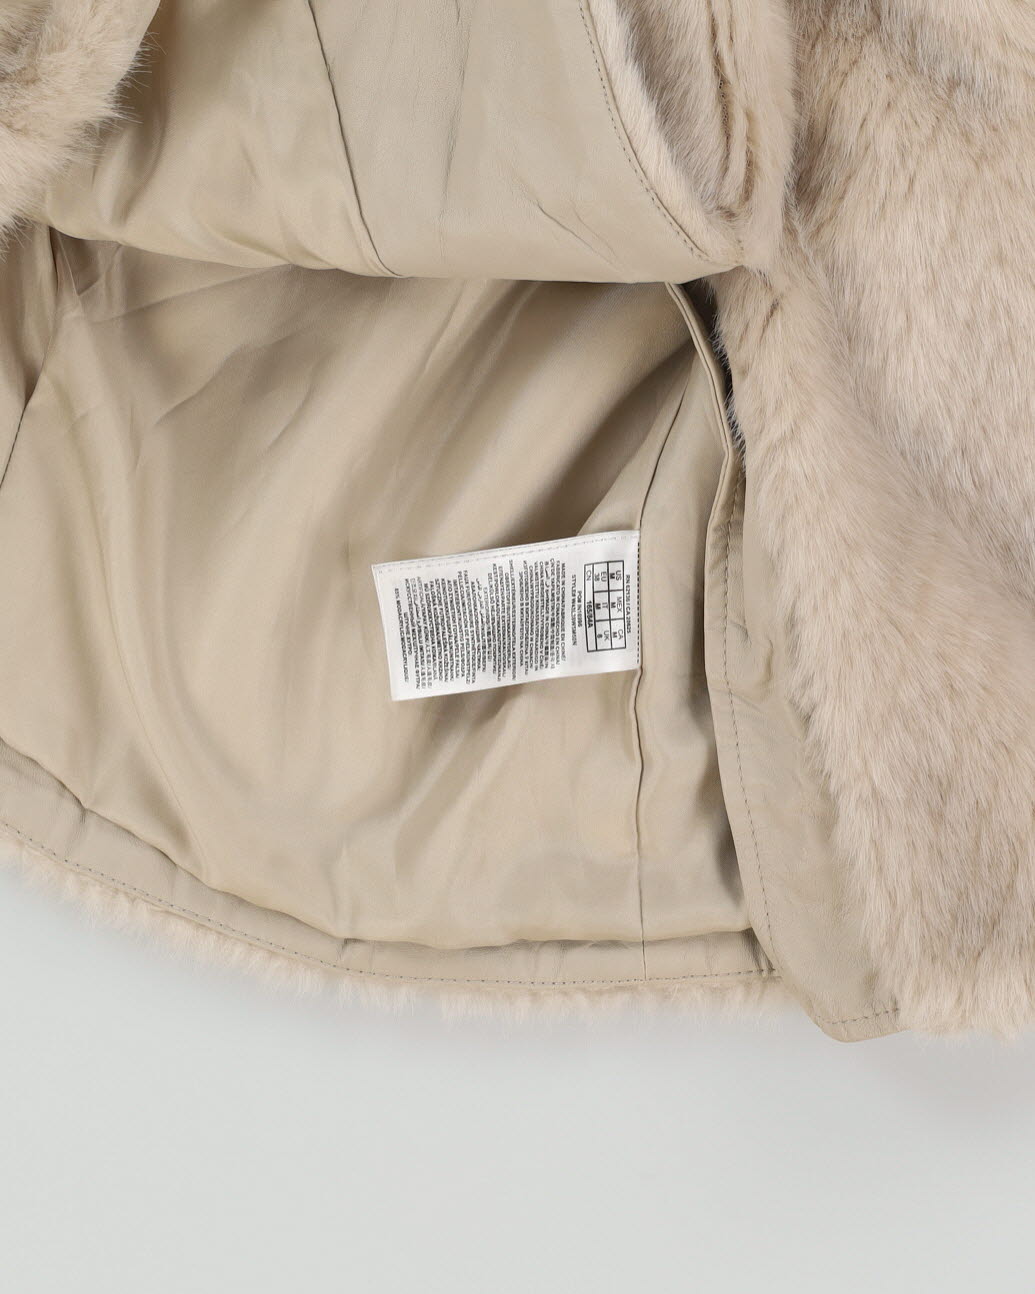 Guess Beige A-Line Faux Fur Jacket - XS